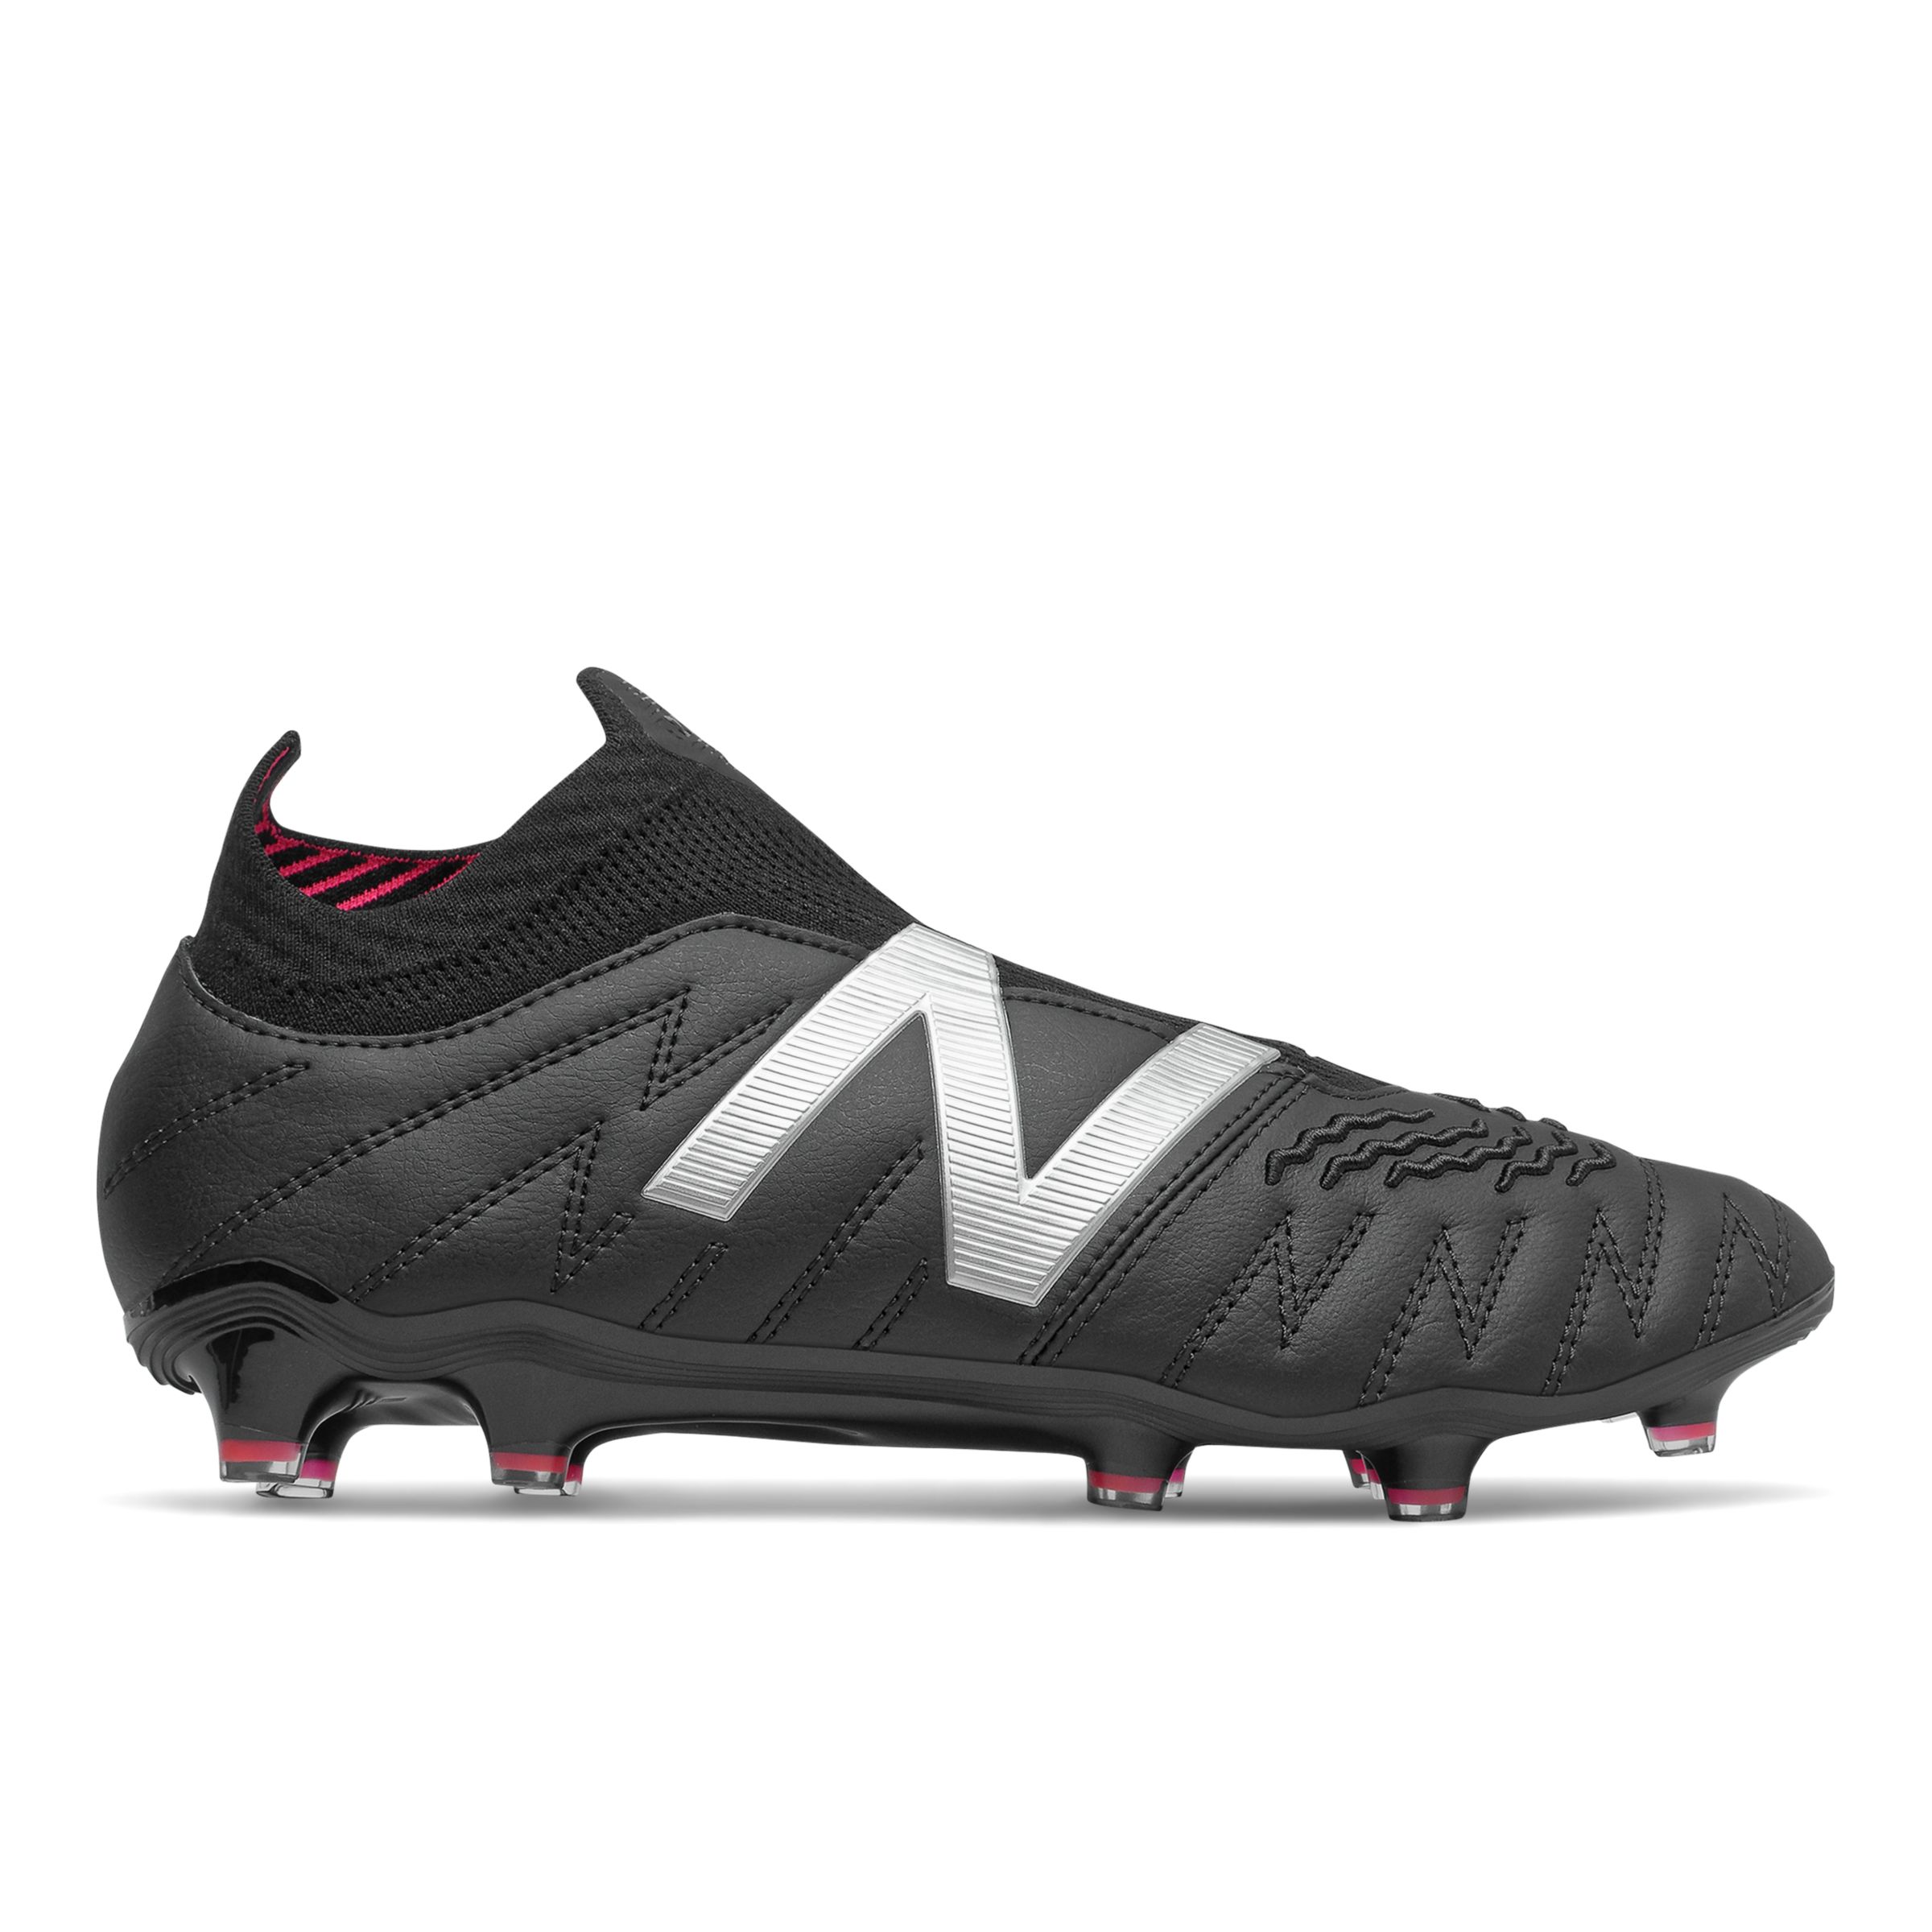 Men's Footwear New Balance Botaas de fútbol Tekela V3+ Pro Leather FG - Hombres EU 40.5, Black/Pink